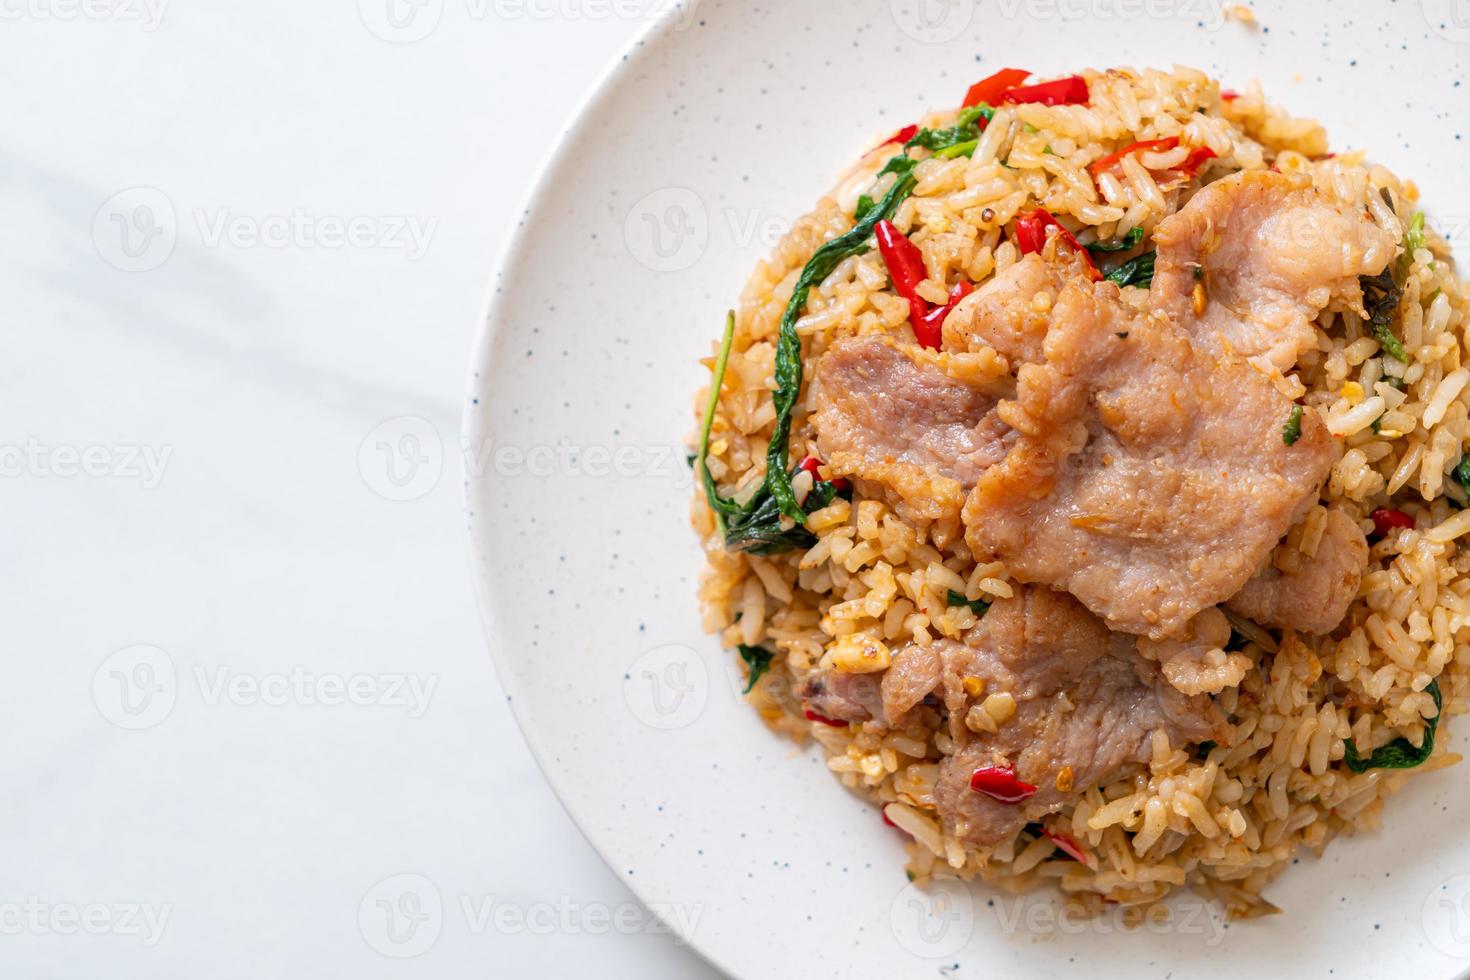 arroz frito com manjericão tailandês e porco - estilo de comida tailandesa foto